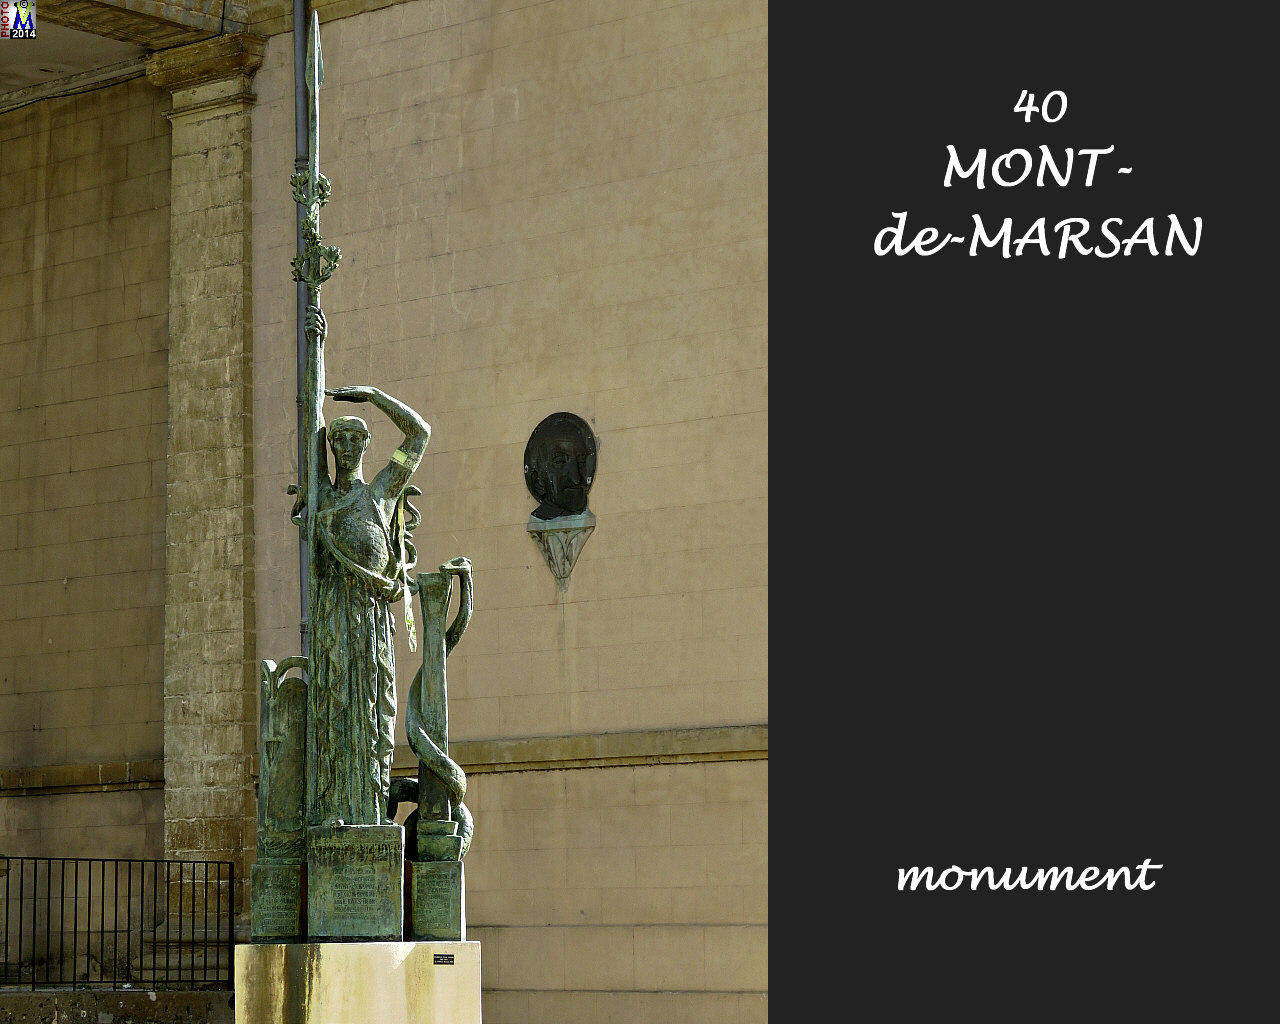 40MONT-MARSAN_monument_100.jpg